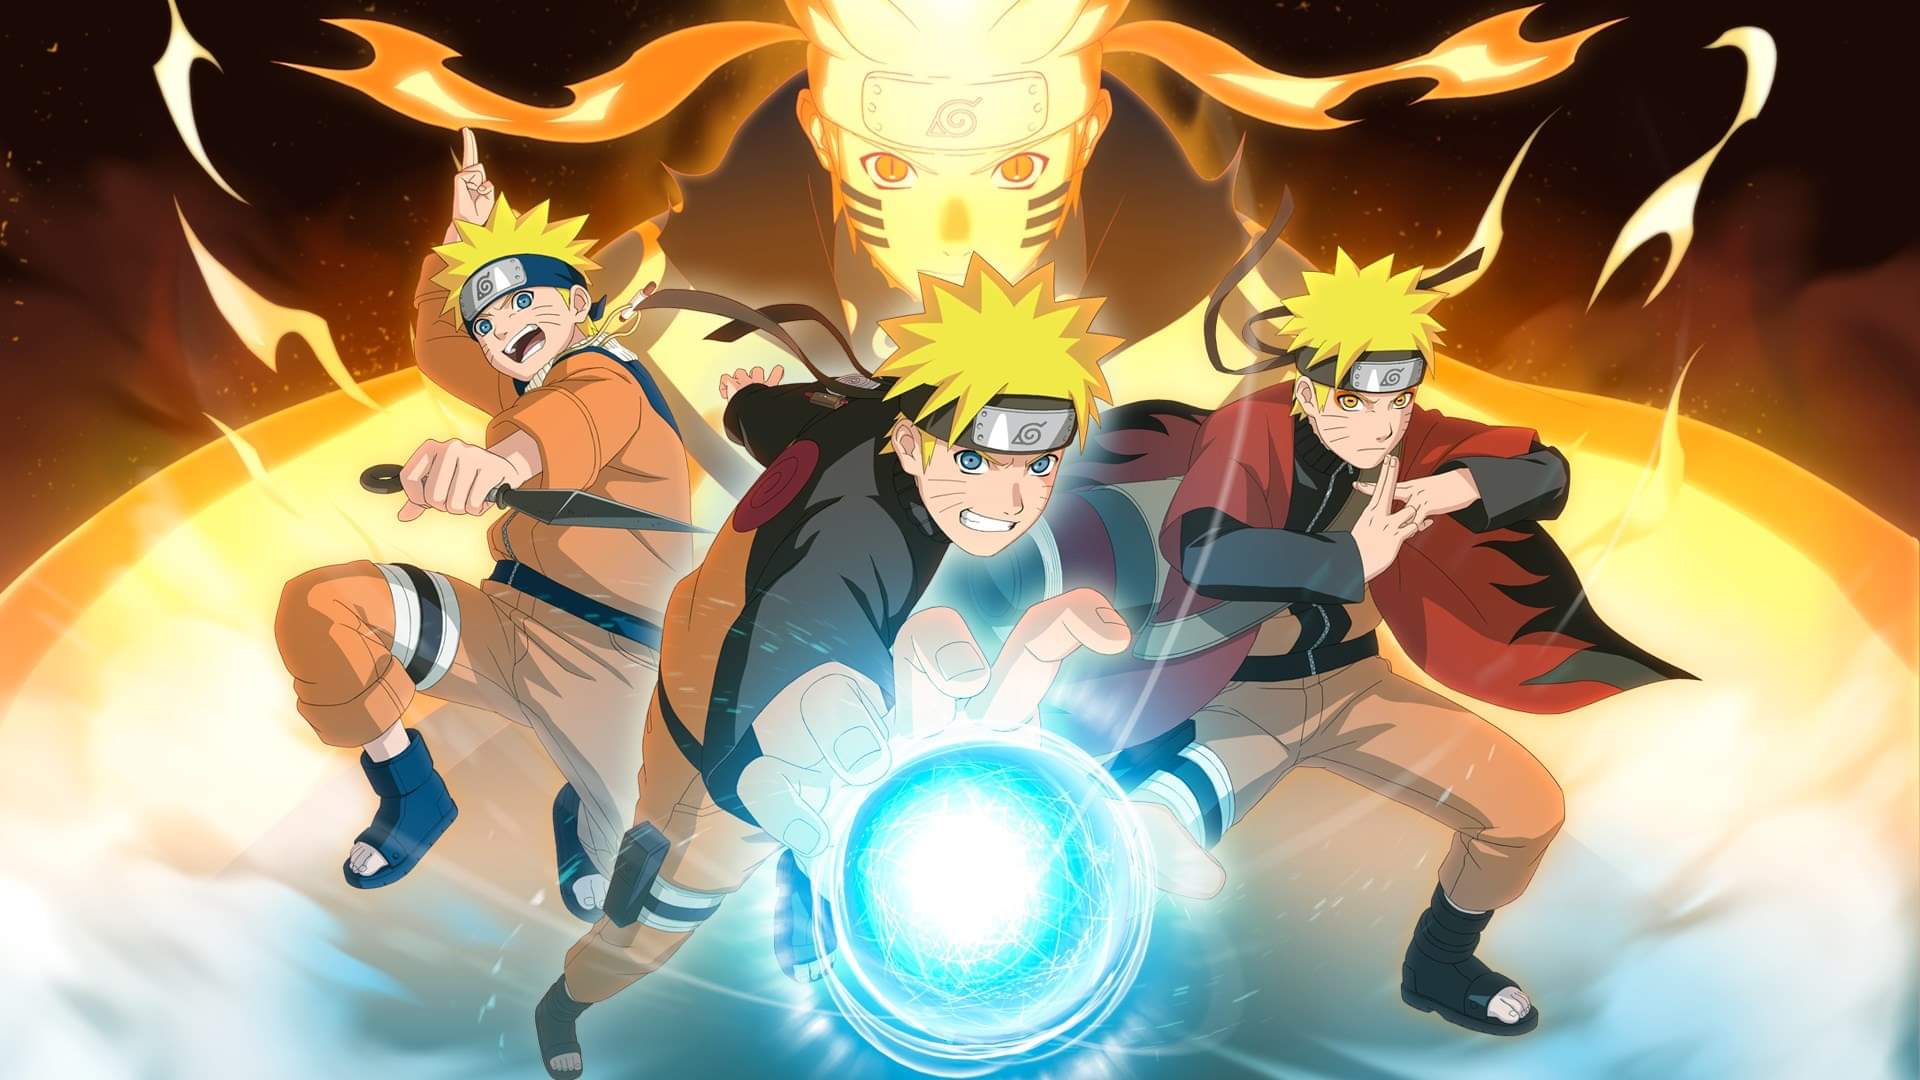 En Que Orden Ver La Serie Naruto Incluyendo Las Peliculas Que Anime